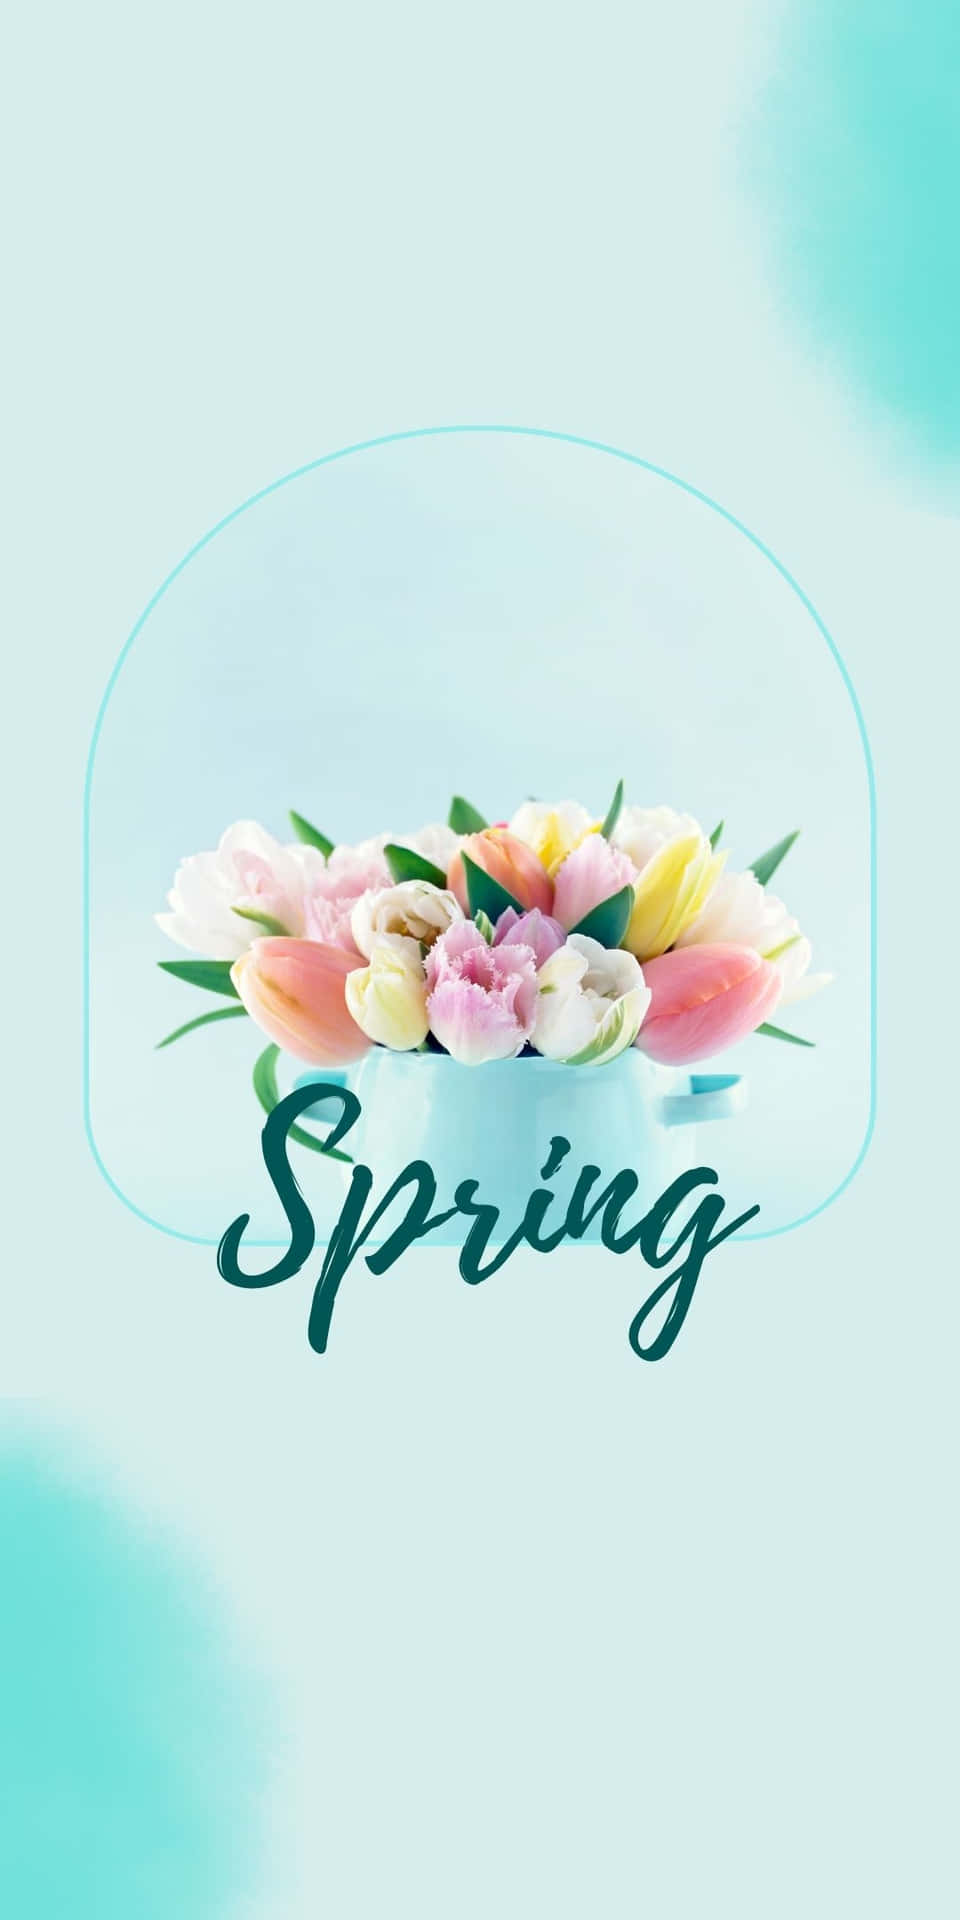 Immagineun Fiore In Fiore Per Rappresentare La Bellezza Della Primavera.